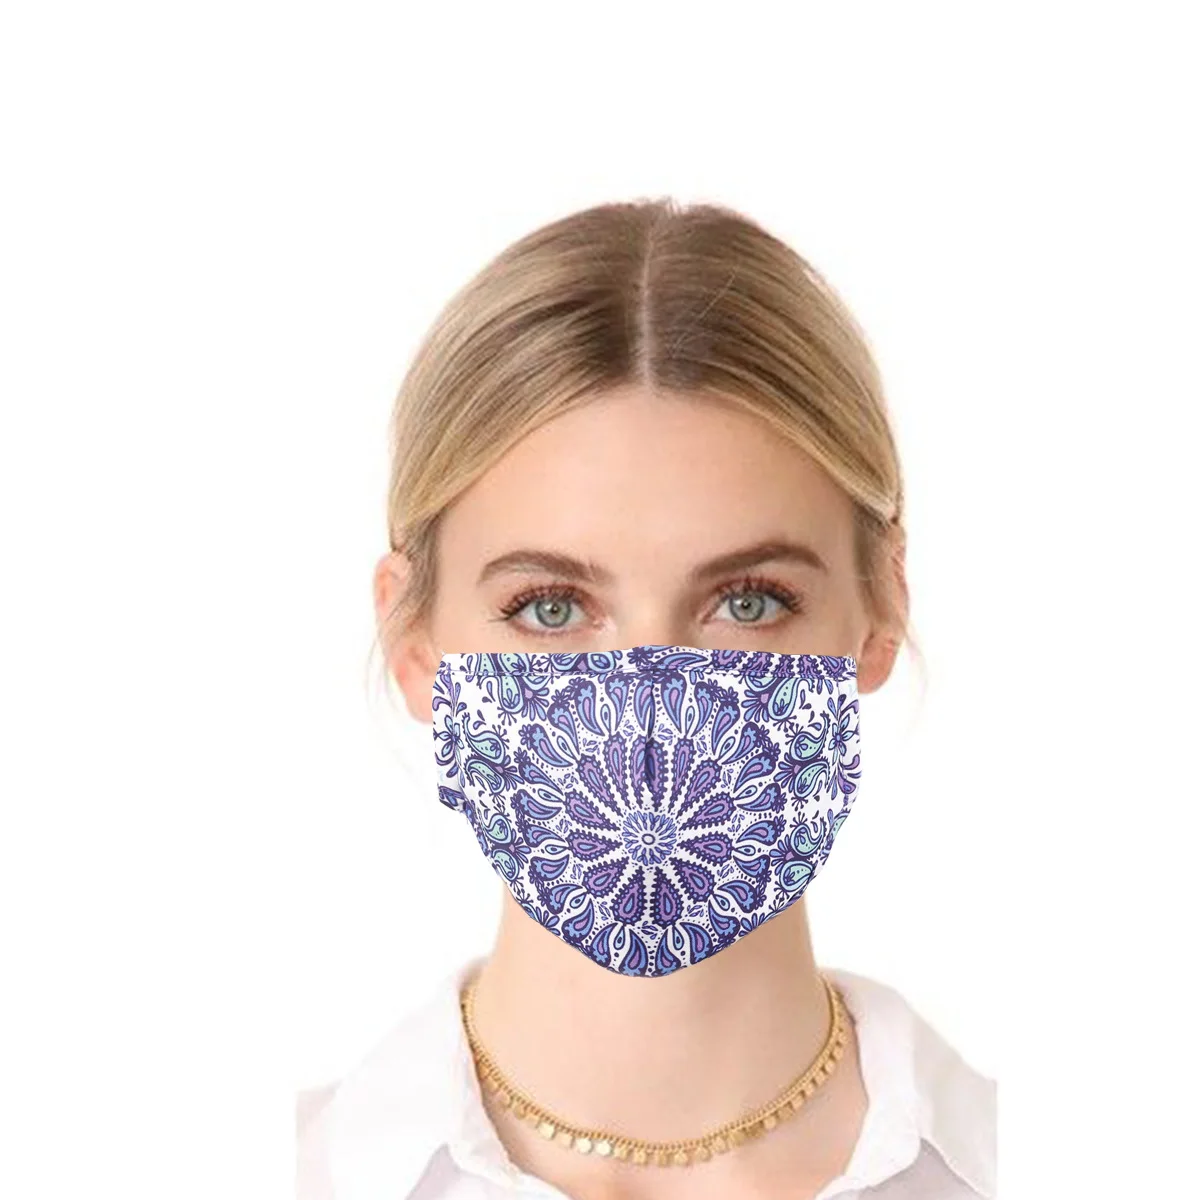 Dorosły zmywalny wielokrotnego użytku ochronny krawat farbowany drukuj maska bawełniana maska trójwarstwowa odporna na kurz maska Masque hurtownia